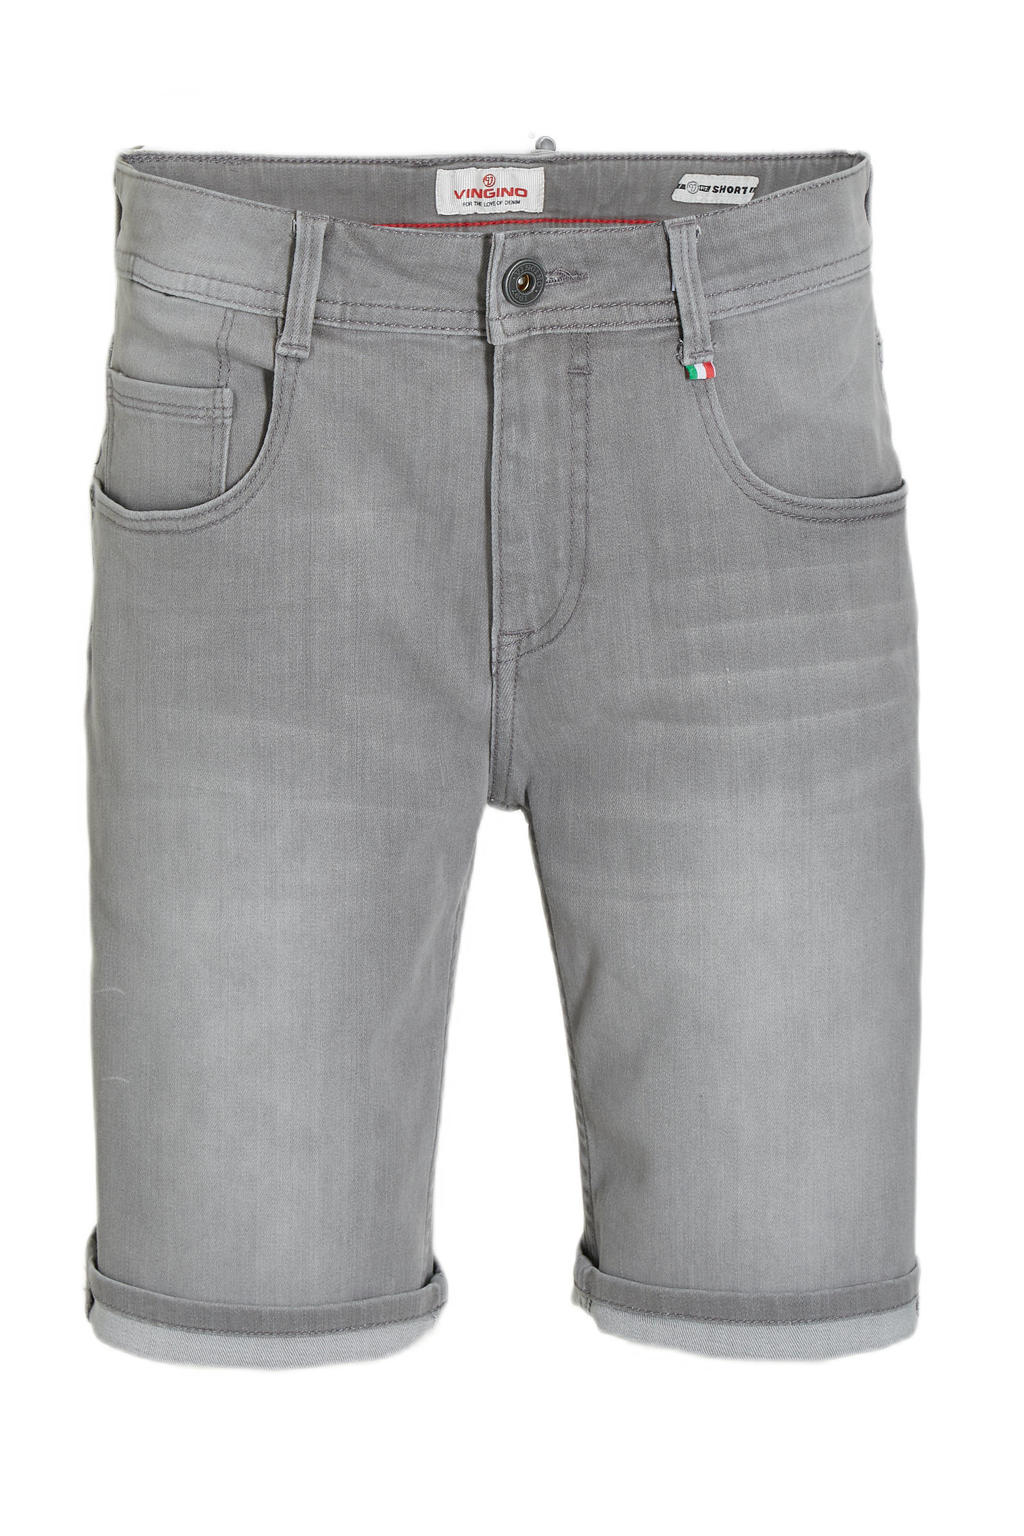 Grijze jongens Vingino jeans bermuda Claas van stretchdenim met regular waist en rits- en knoopsluiting